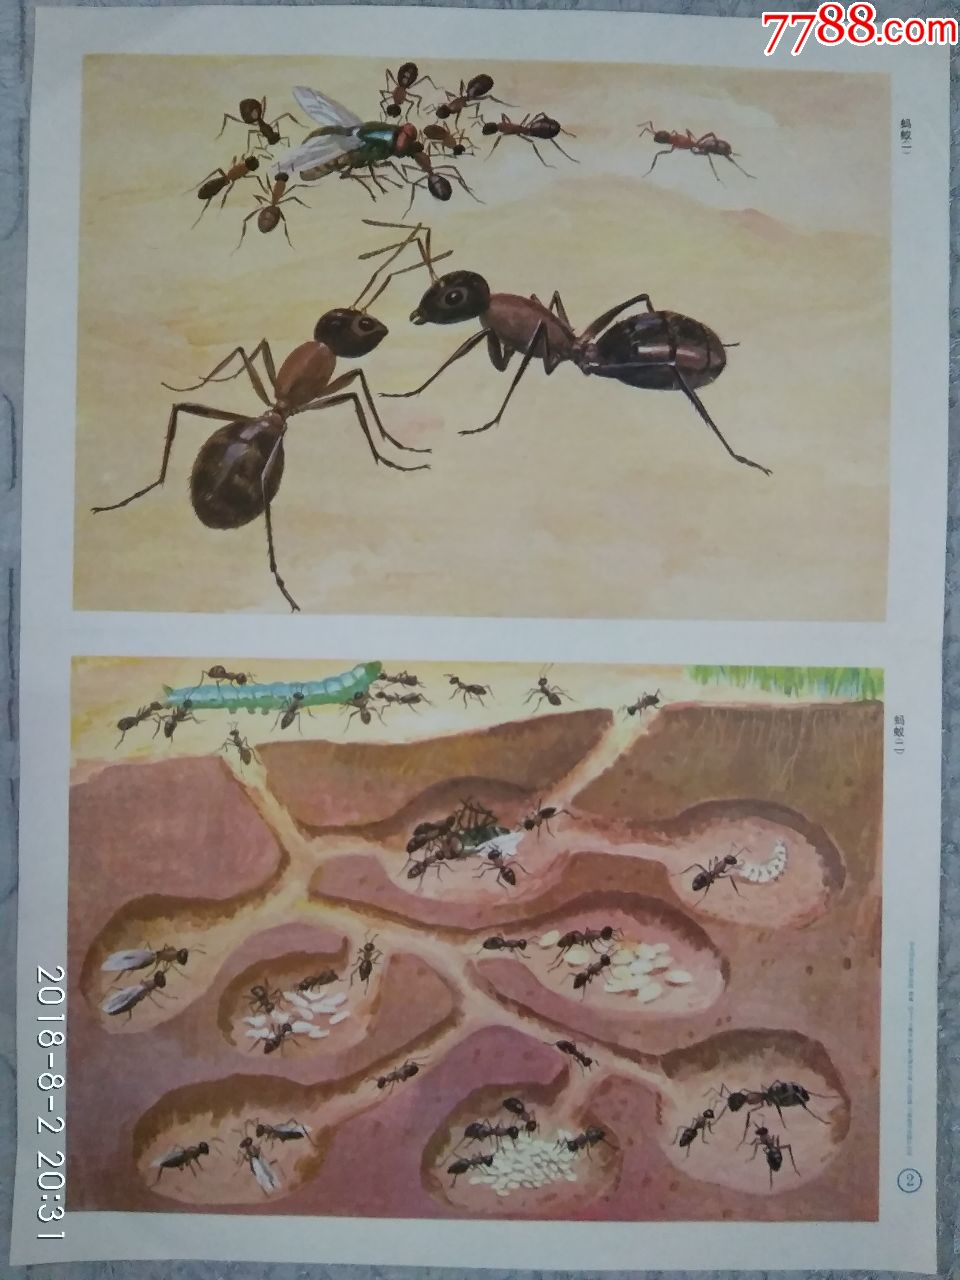 幼儿园常识教育挂图昆虫(蜜蜂蚂蚁,共两张)